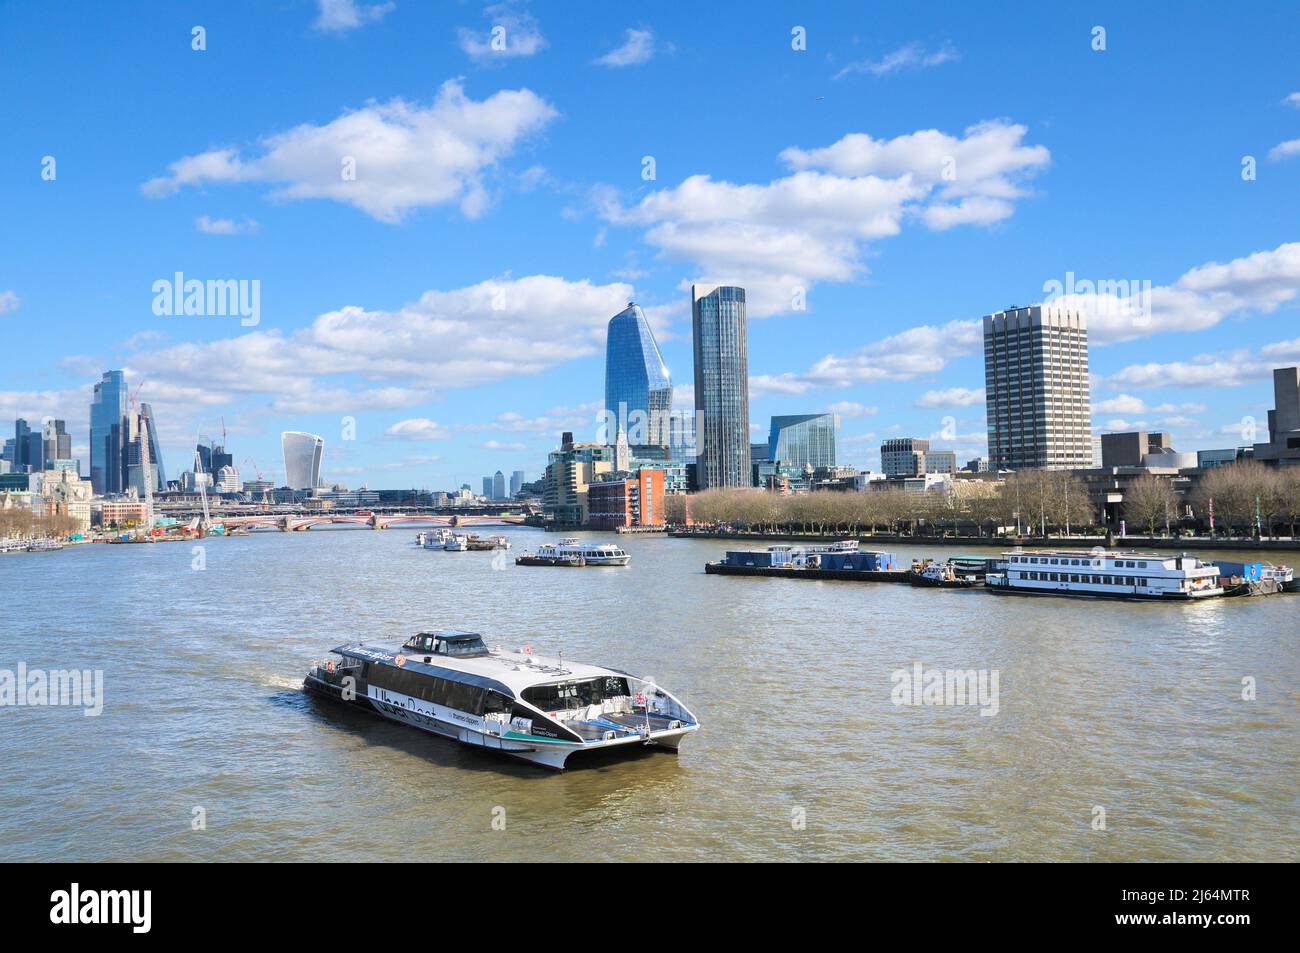 Horizon de Londres avec bateau-tondeuse sur la Tamise, vue depuis le pont de Waterloo vers les gratte-ciels One Blackfriars et South Bank Tower, Angleterre, Royaume-Uni Banque D'Images